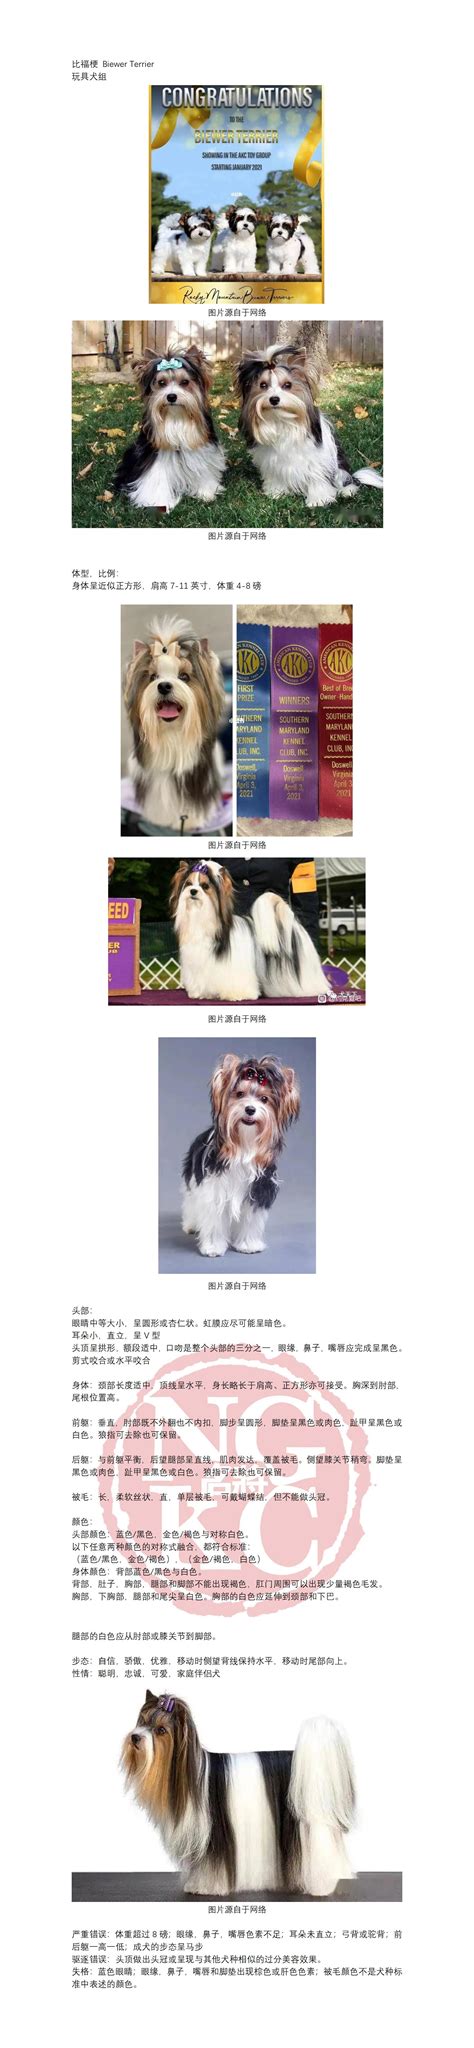 犬业广告图片免费下载_犬业广告素材_犬业广告模板-图行天下素材网